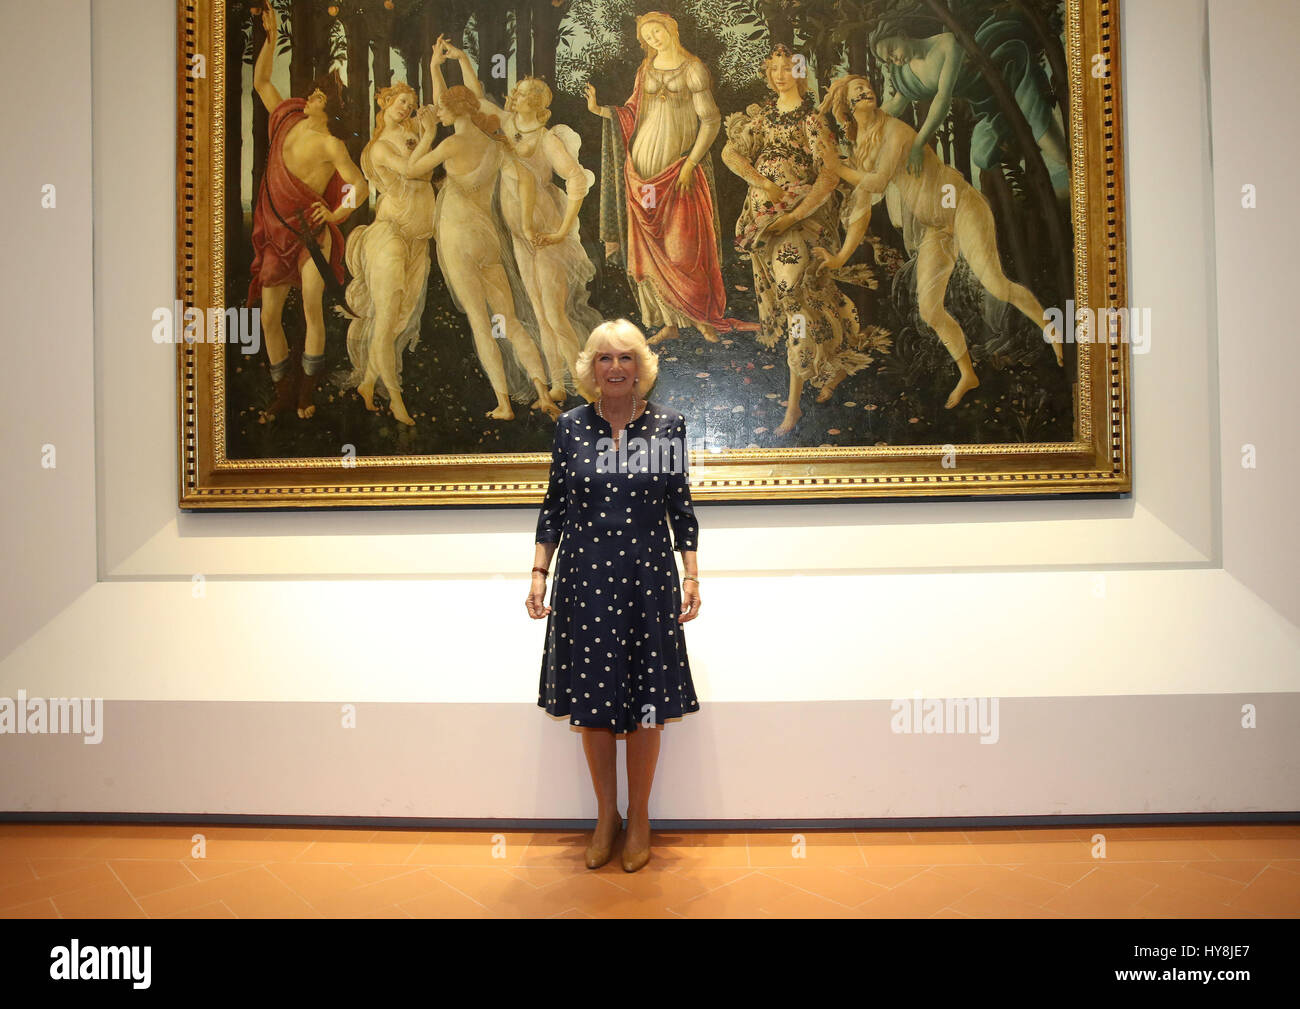 La duchesse de Cornouailles en face de Primavera, également connu sous le nom de l'Allégorie du printemps, une peinture d'artiste de la Renaissance italienne Sandro Botticelli, lors d'une visite à la Corridor de Vasari à Florence, Italie. Banque D'Images